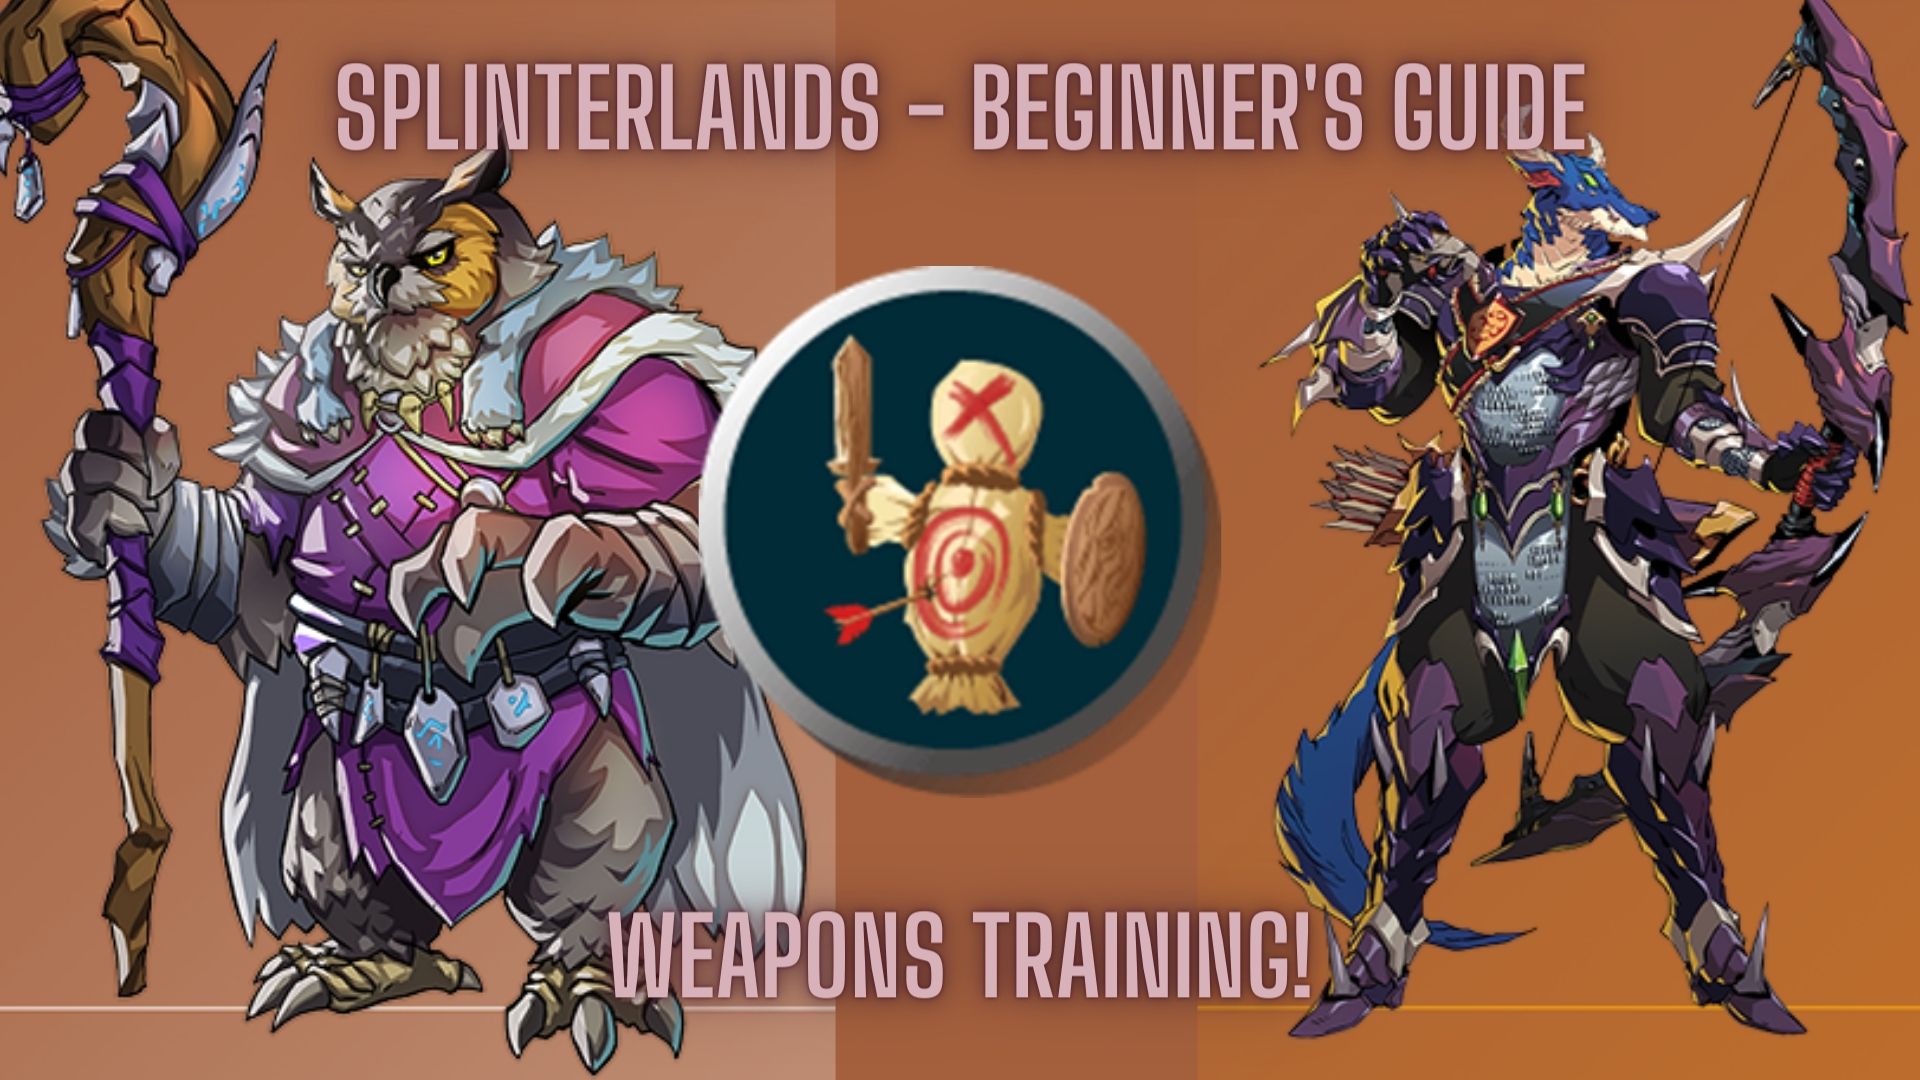 @ga38jem/splinterlands-beginner-s-guide-weapons-training